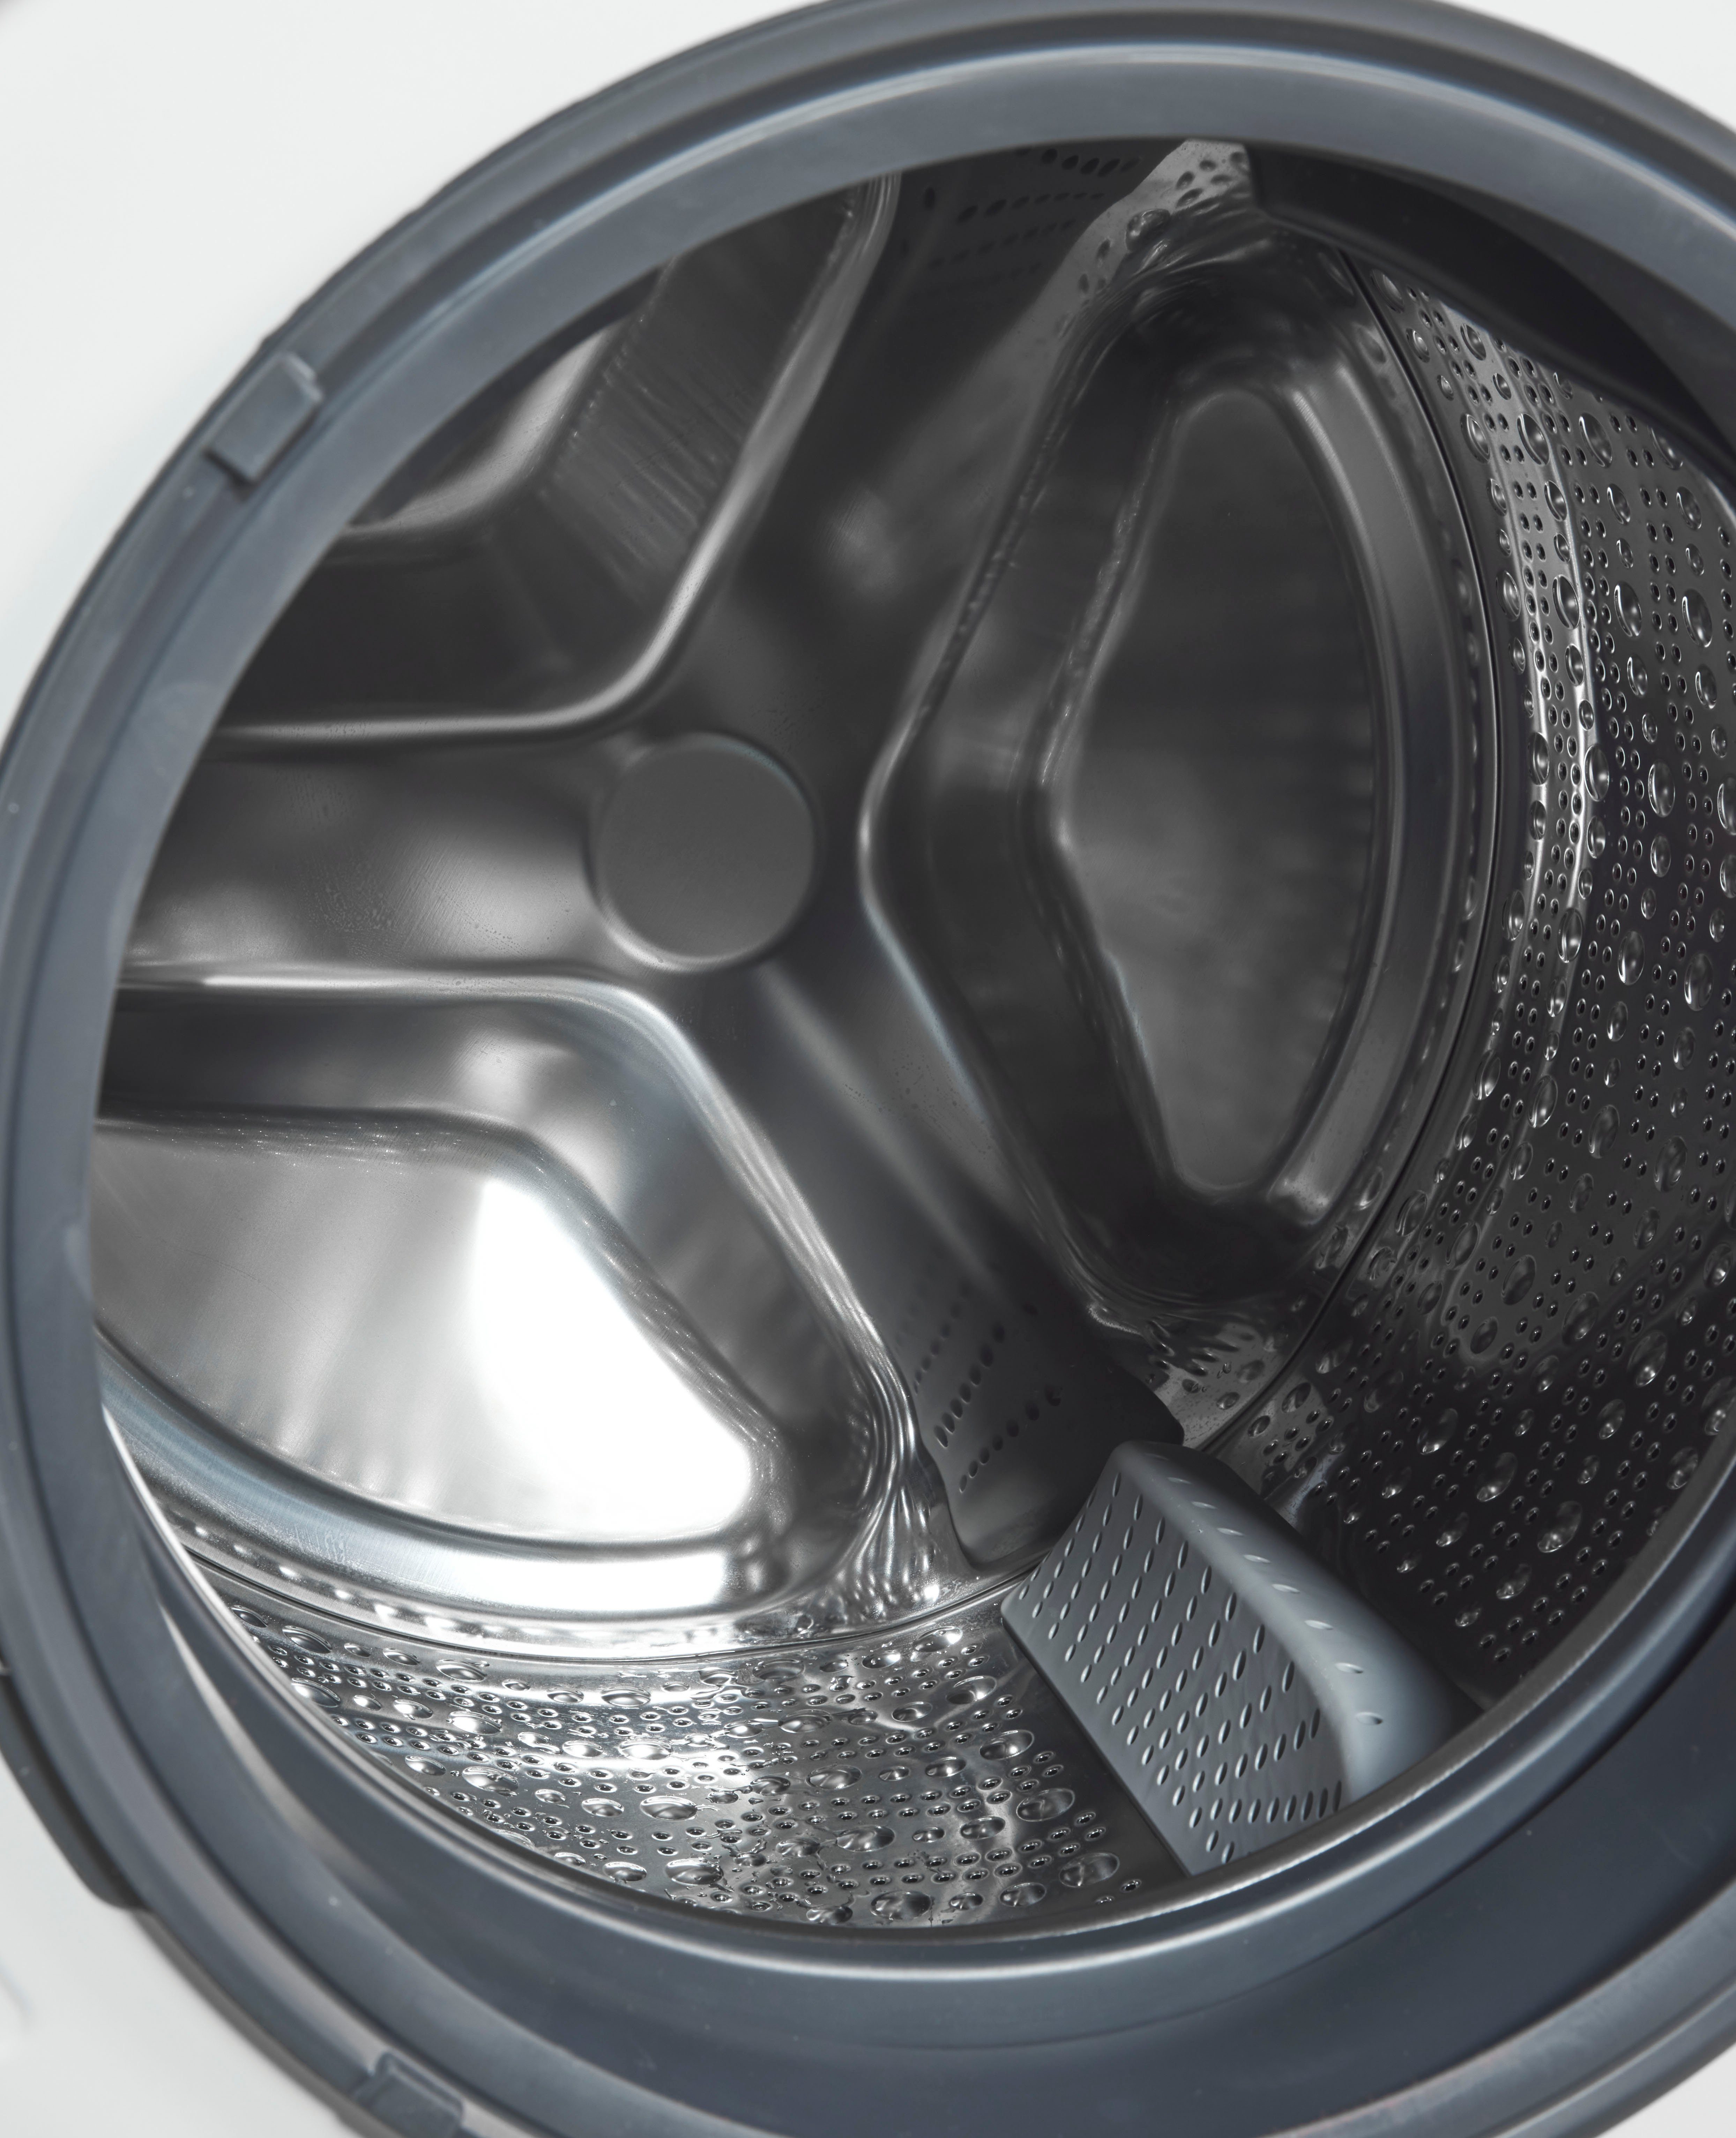 kg, WM14N0A4, 1400 8 – Knitterfalten smartFinish SIEMENS sämtliche Waschmaschine dank Dampf iQ300 U/min, glättet